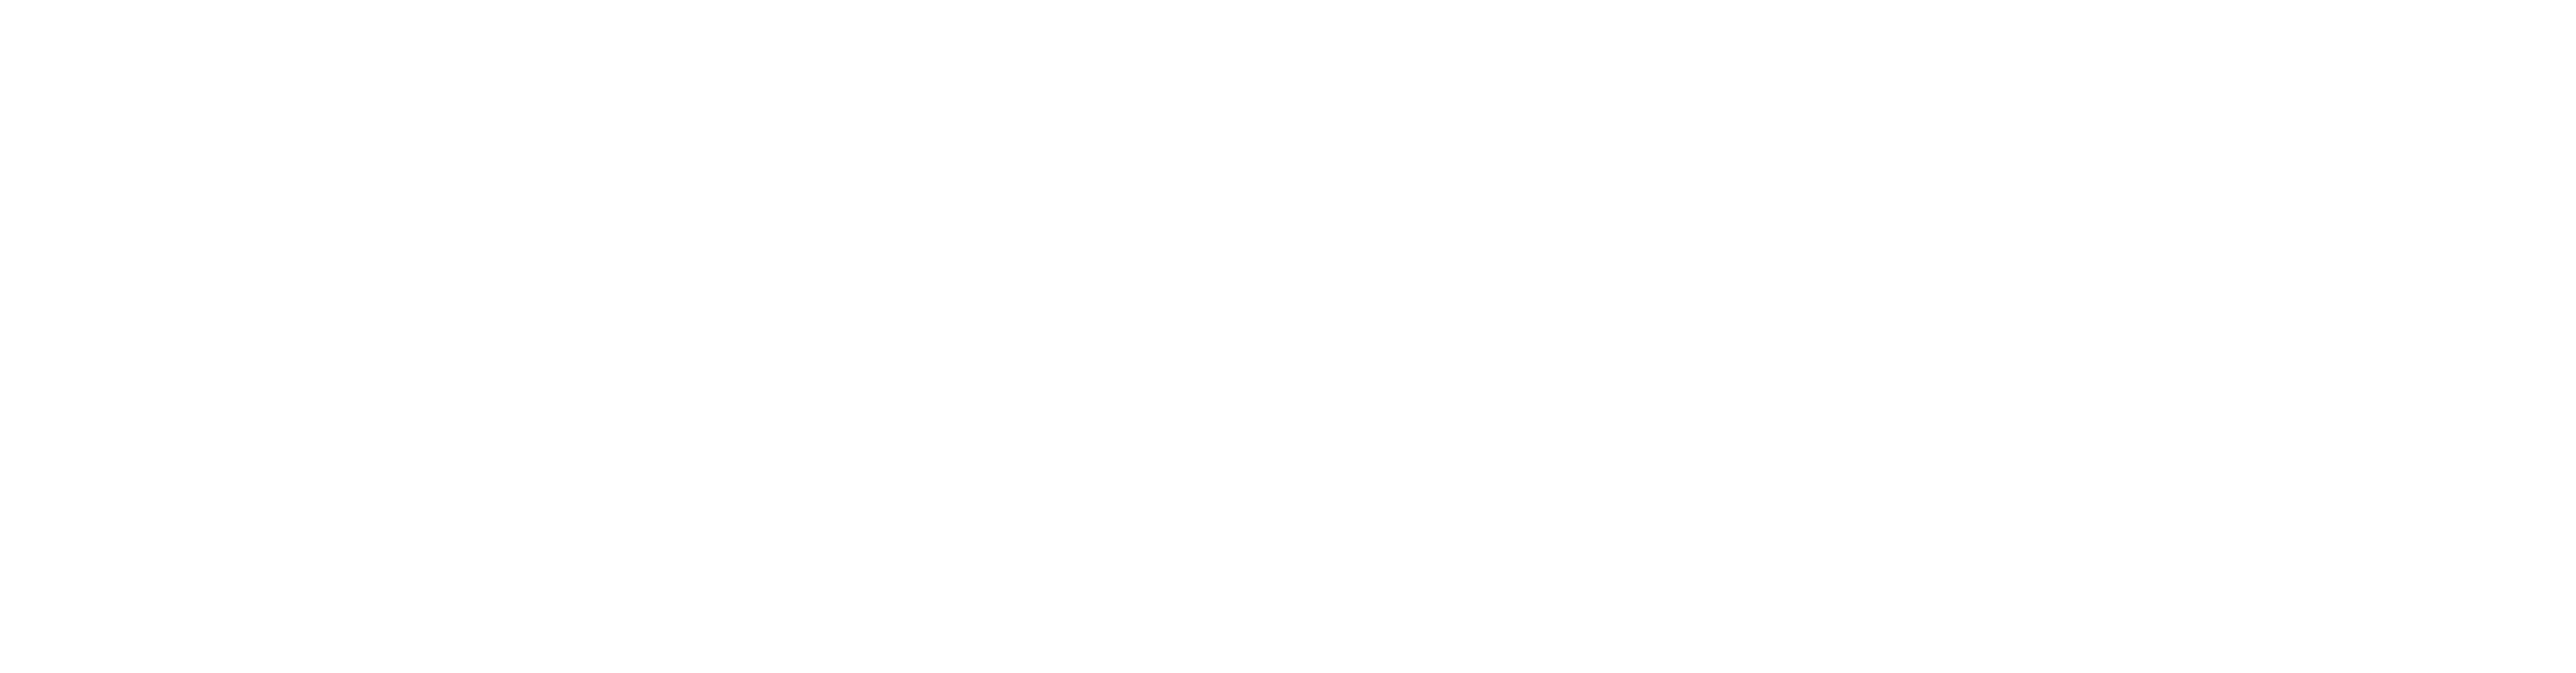 Logo de finançat per la UE NextGeneration